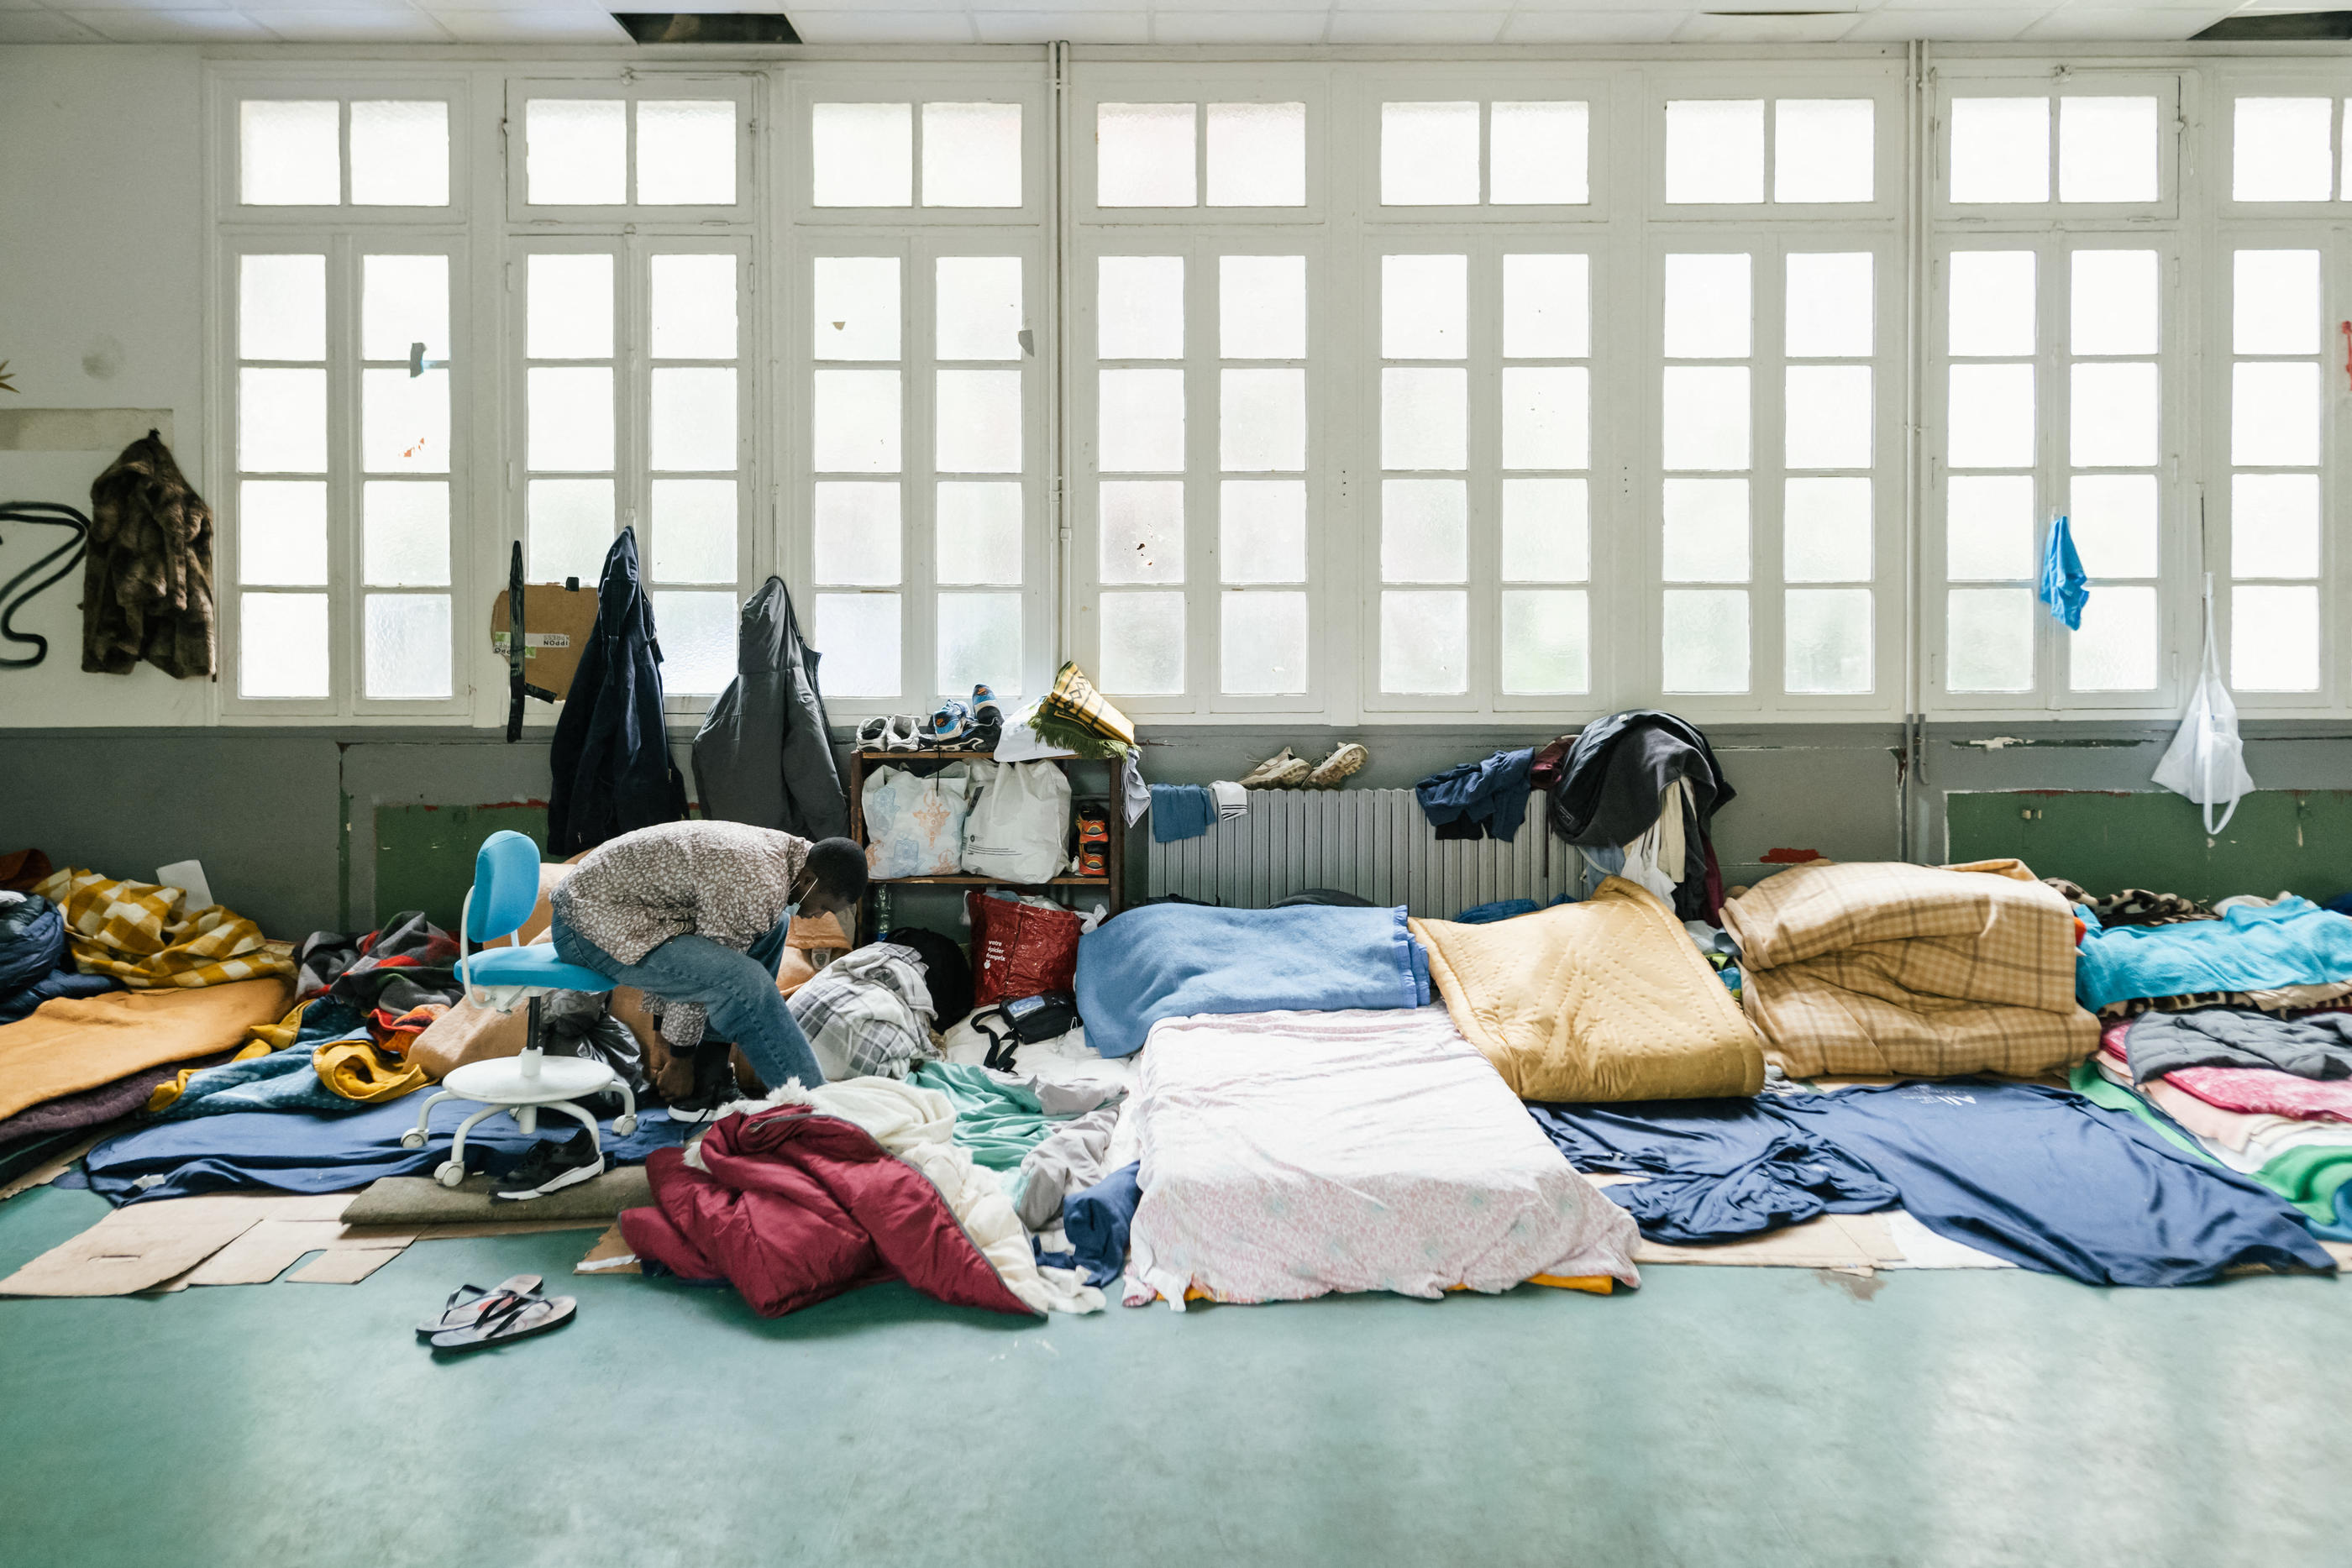 Environ 480 jeunes migrants dorment désormais dans cette école désaffectée de la rue Erlanger dans le XVIe arrondissement de Paris. ABACA/Gauer Pauline